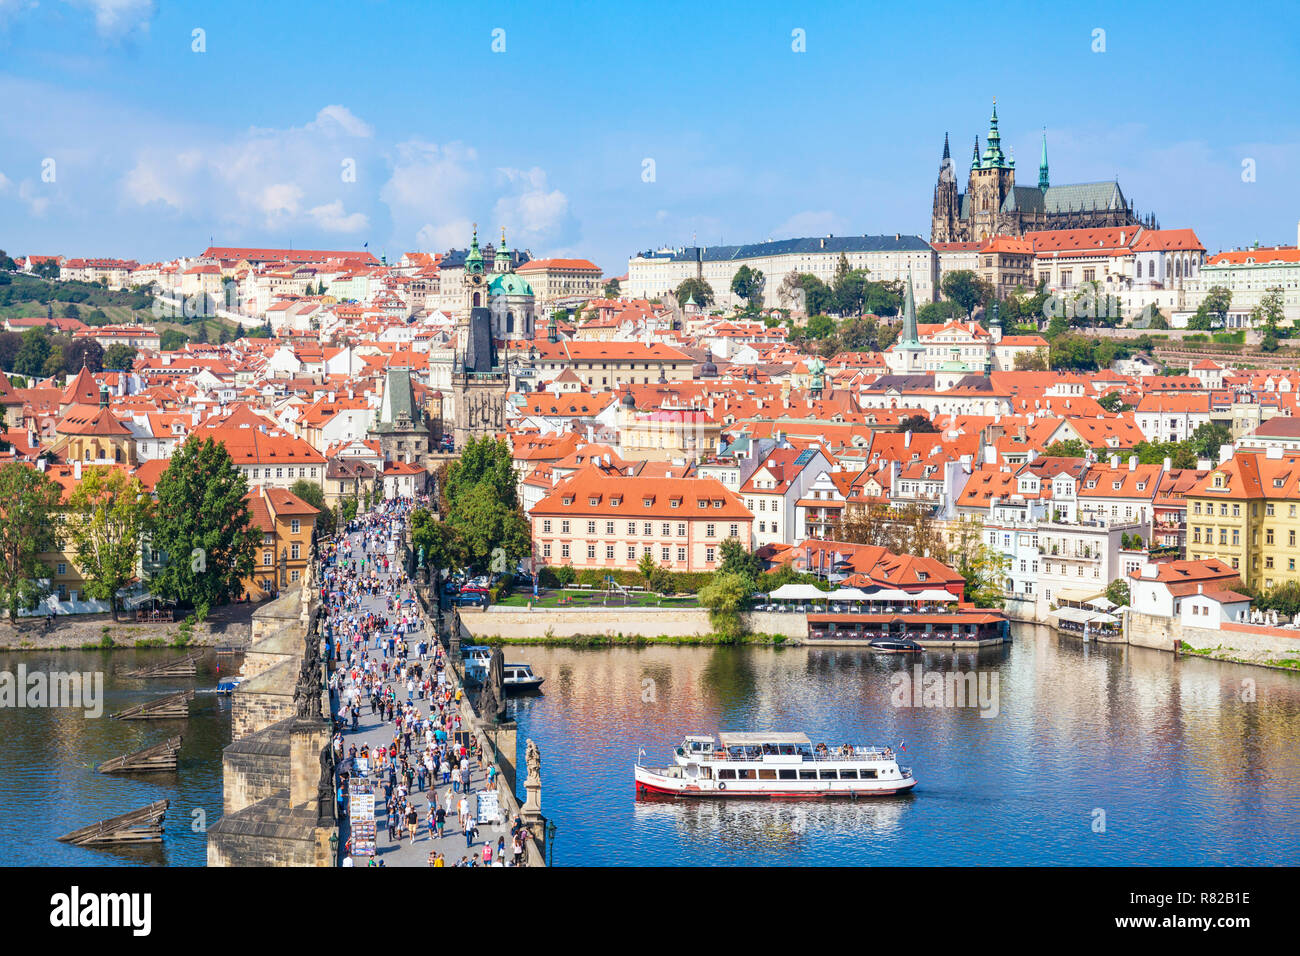 River Cruise Boot unter der Karlsbrücke Prag Moldau Prager Burg und der St. Veits Kathedrale Mala Strana Prag Tschechische Republik Europa Stockfoto